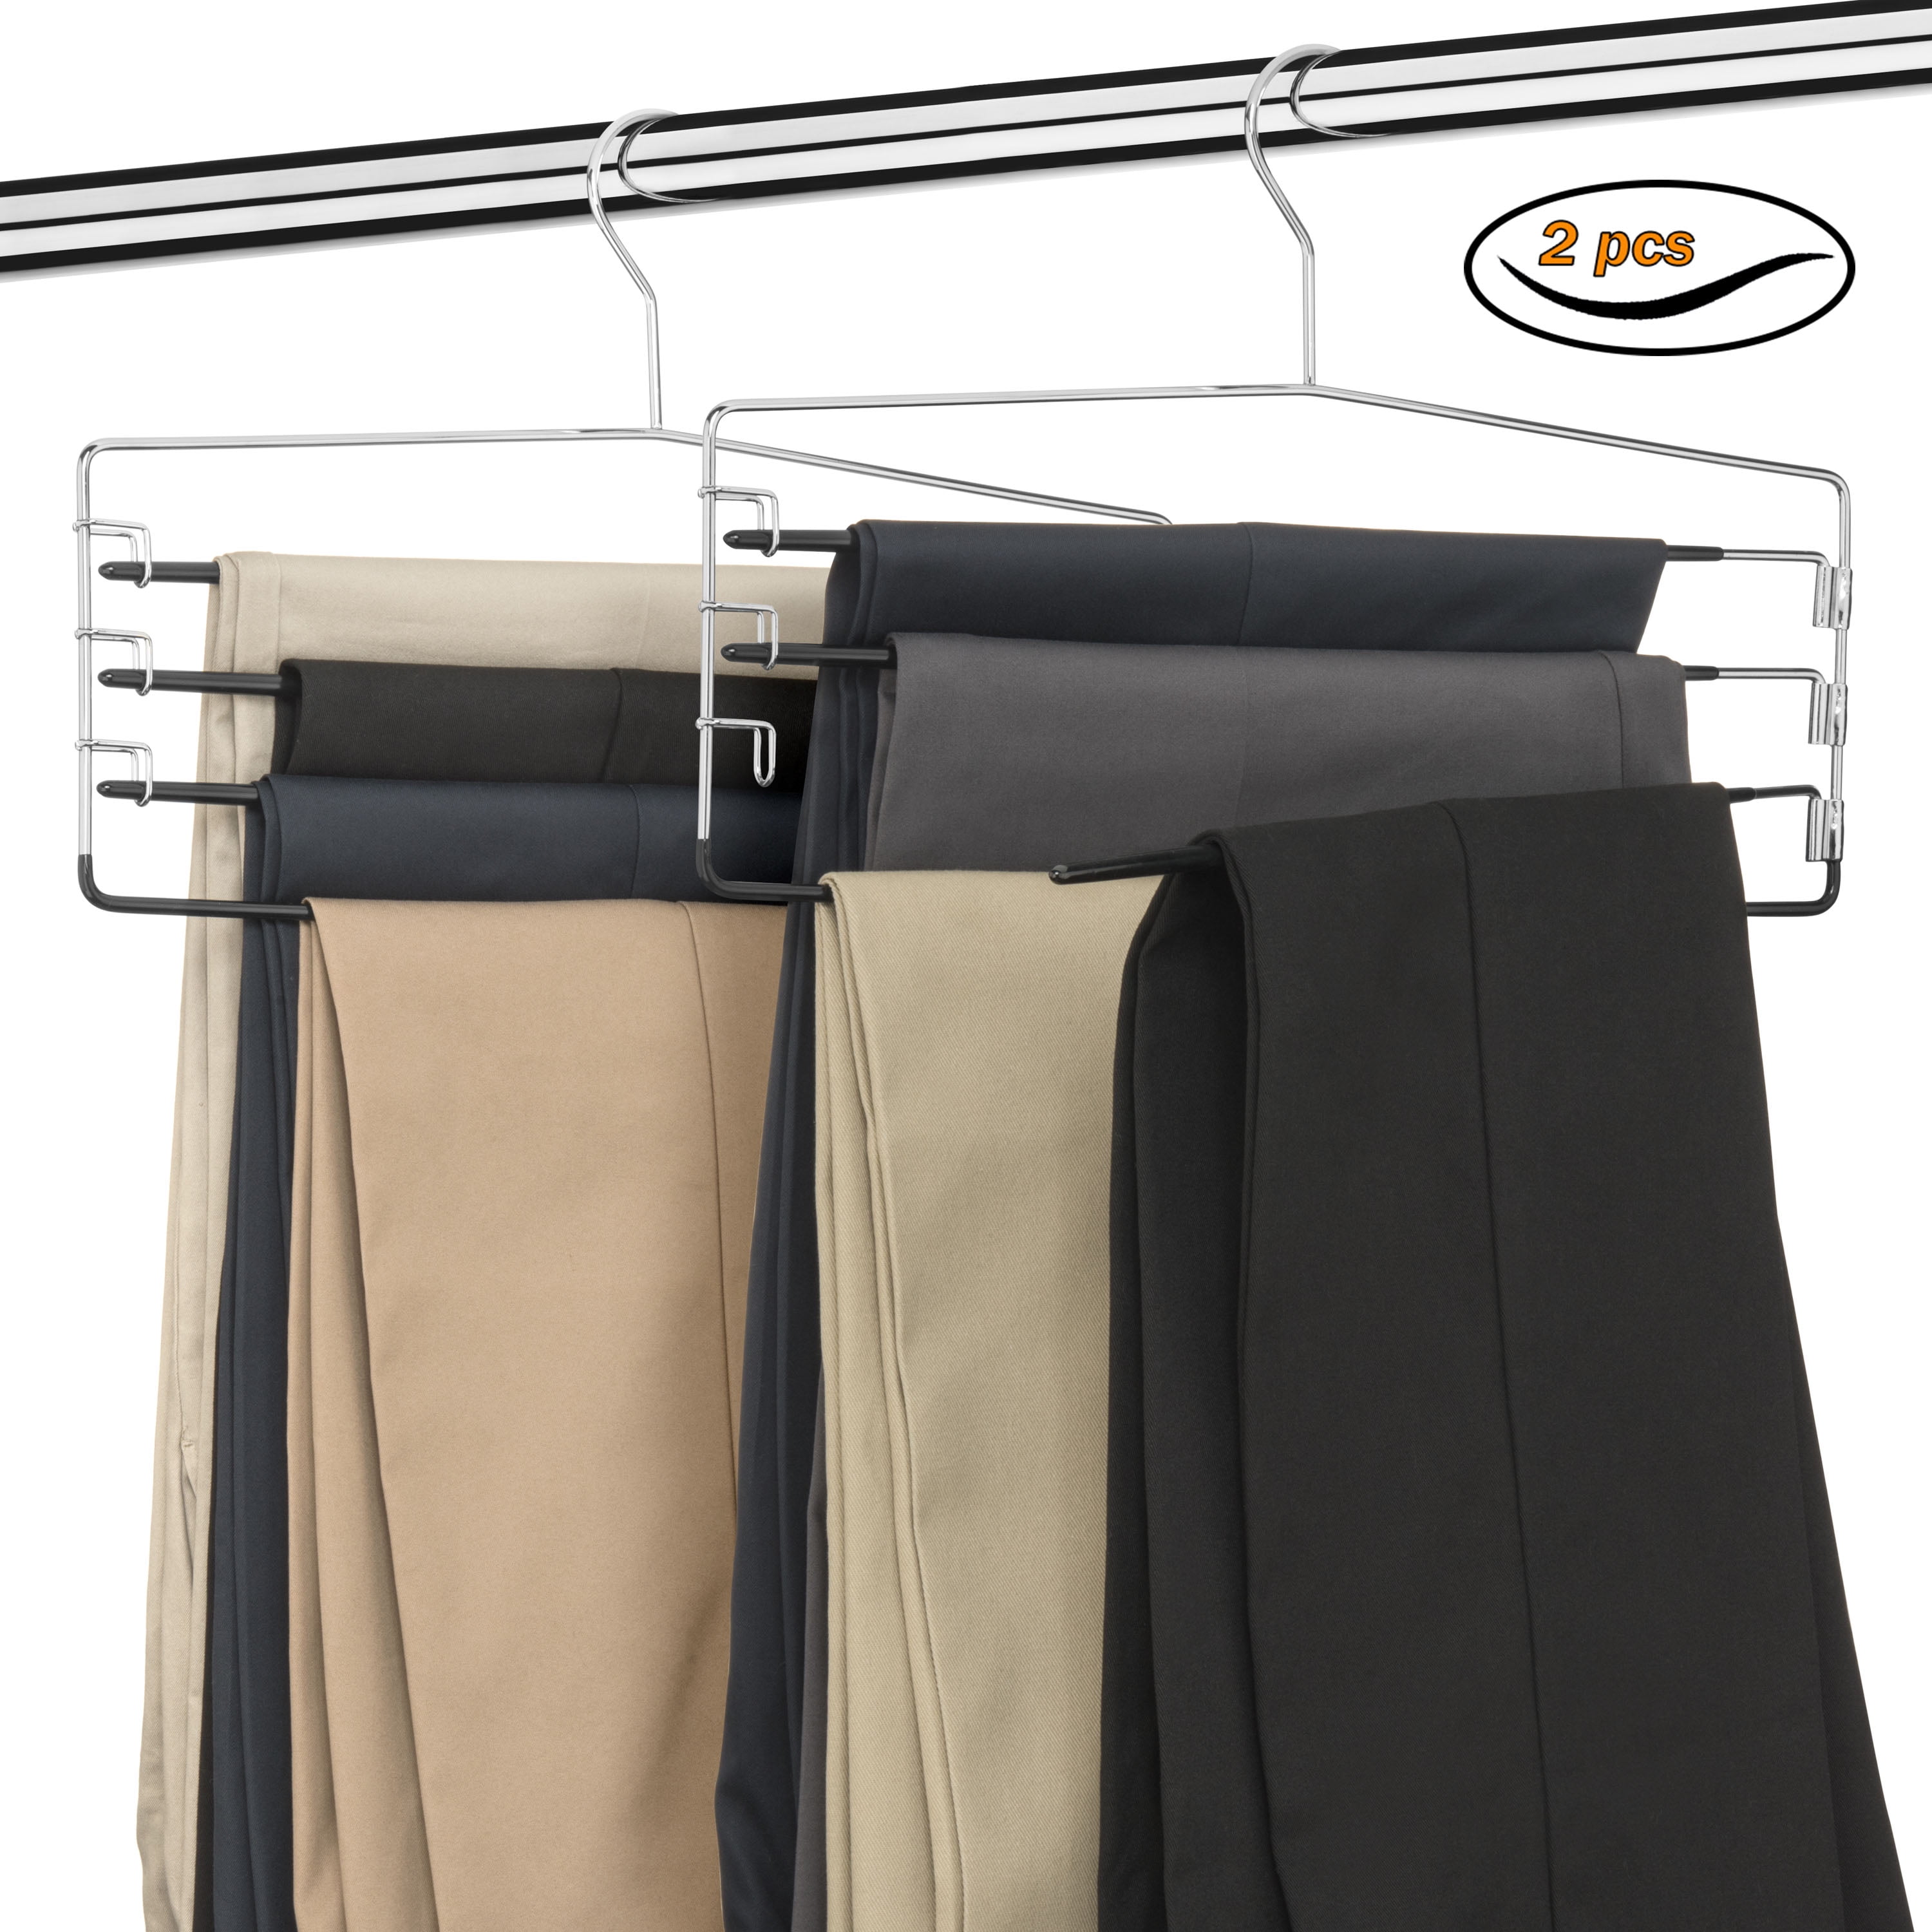 HUJI Sturdy 4 Tier Trouser Skirt Pants Hanger Chrome and Black Vinyl 